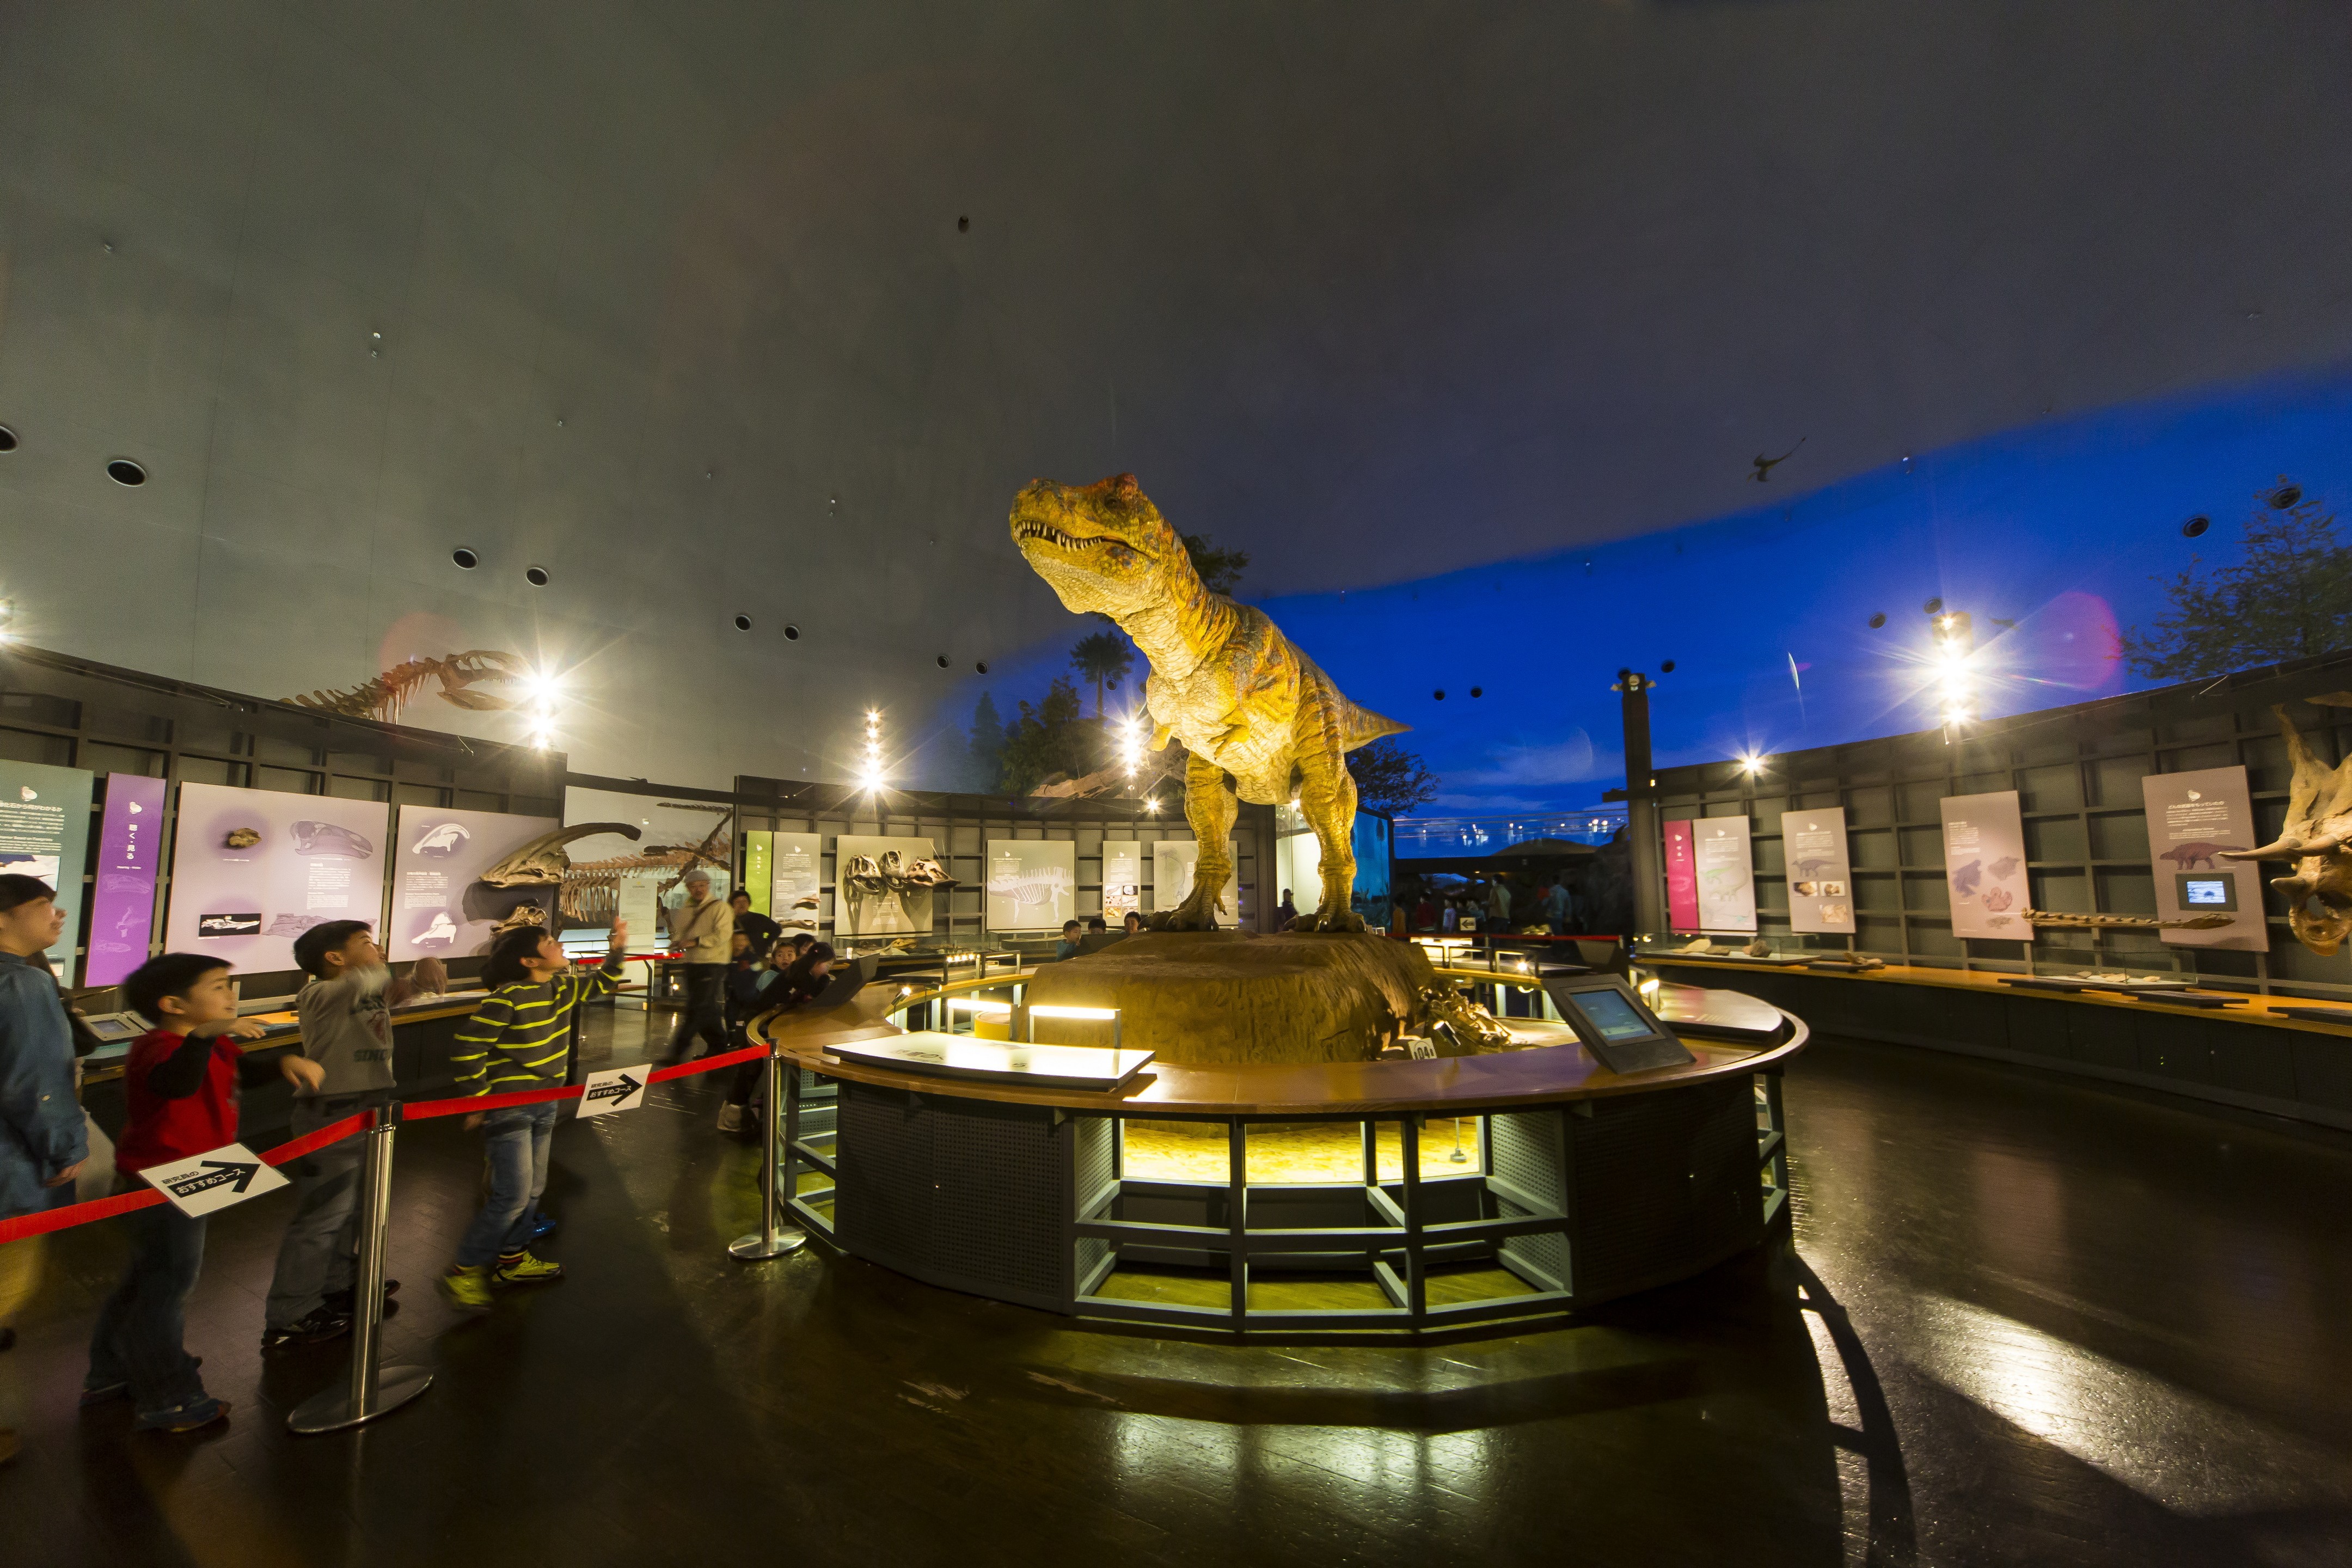 【จังหวัดฟุกุอิ】พิพิธภัณฑ์ไดโนเสาร์จังหวัดฟุกุอิ